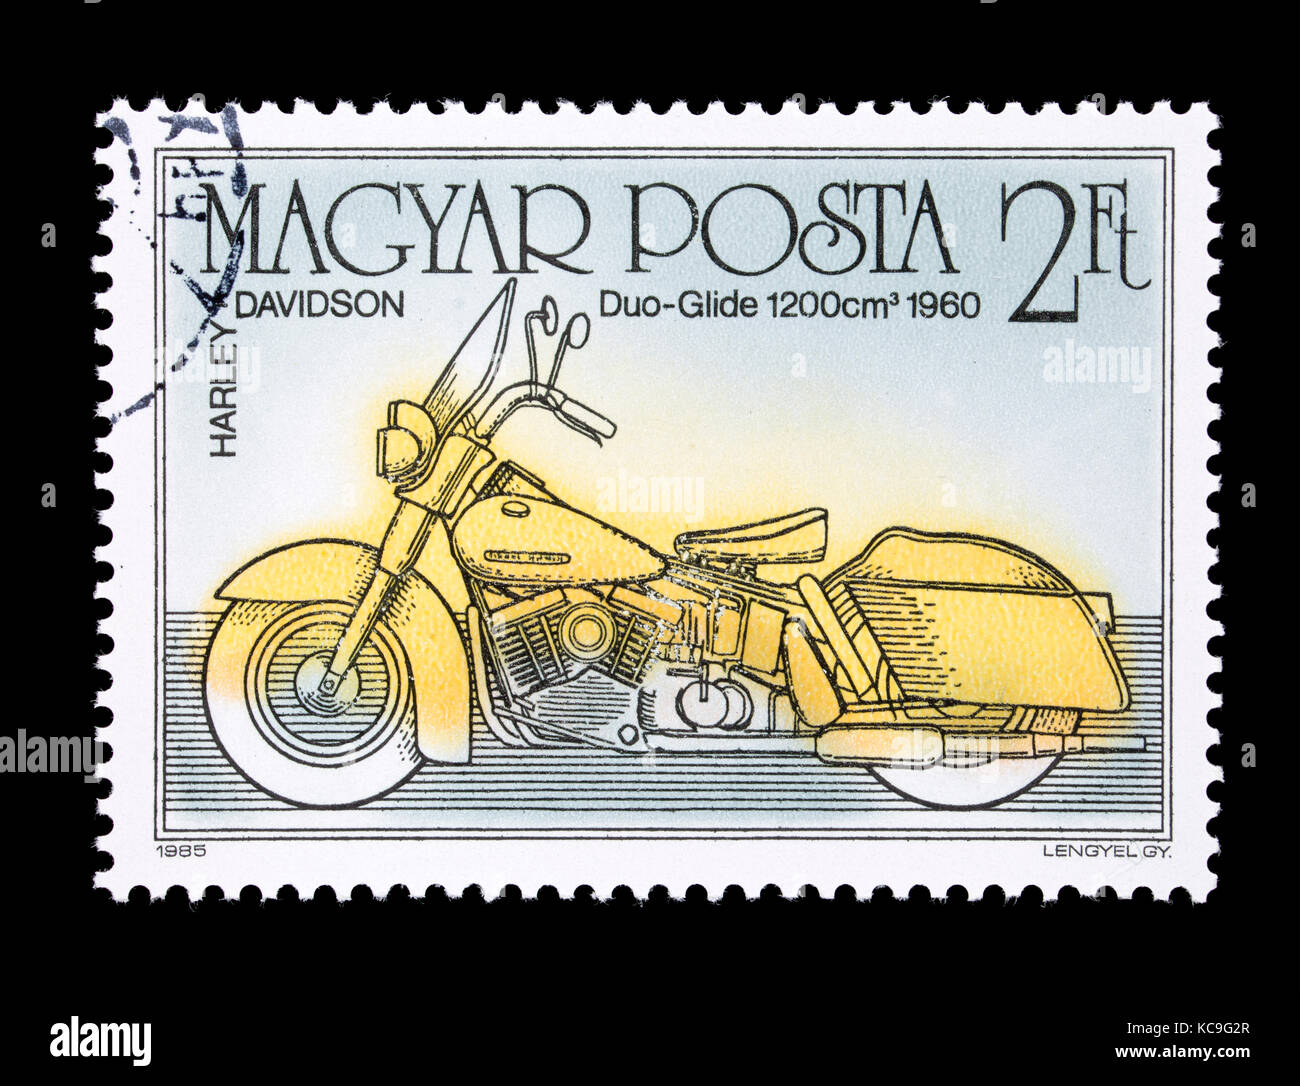 Timbre-poste de Hongrie représentant une Harley-Davidson Duo-Glide de 1960, centenaire de la moto. Banque D'Images